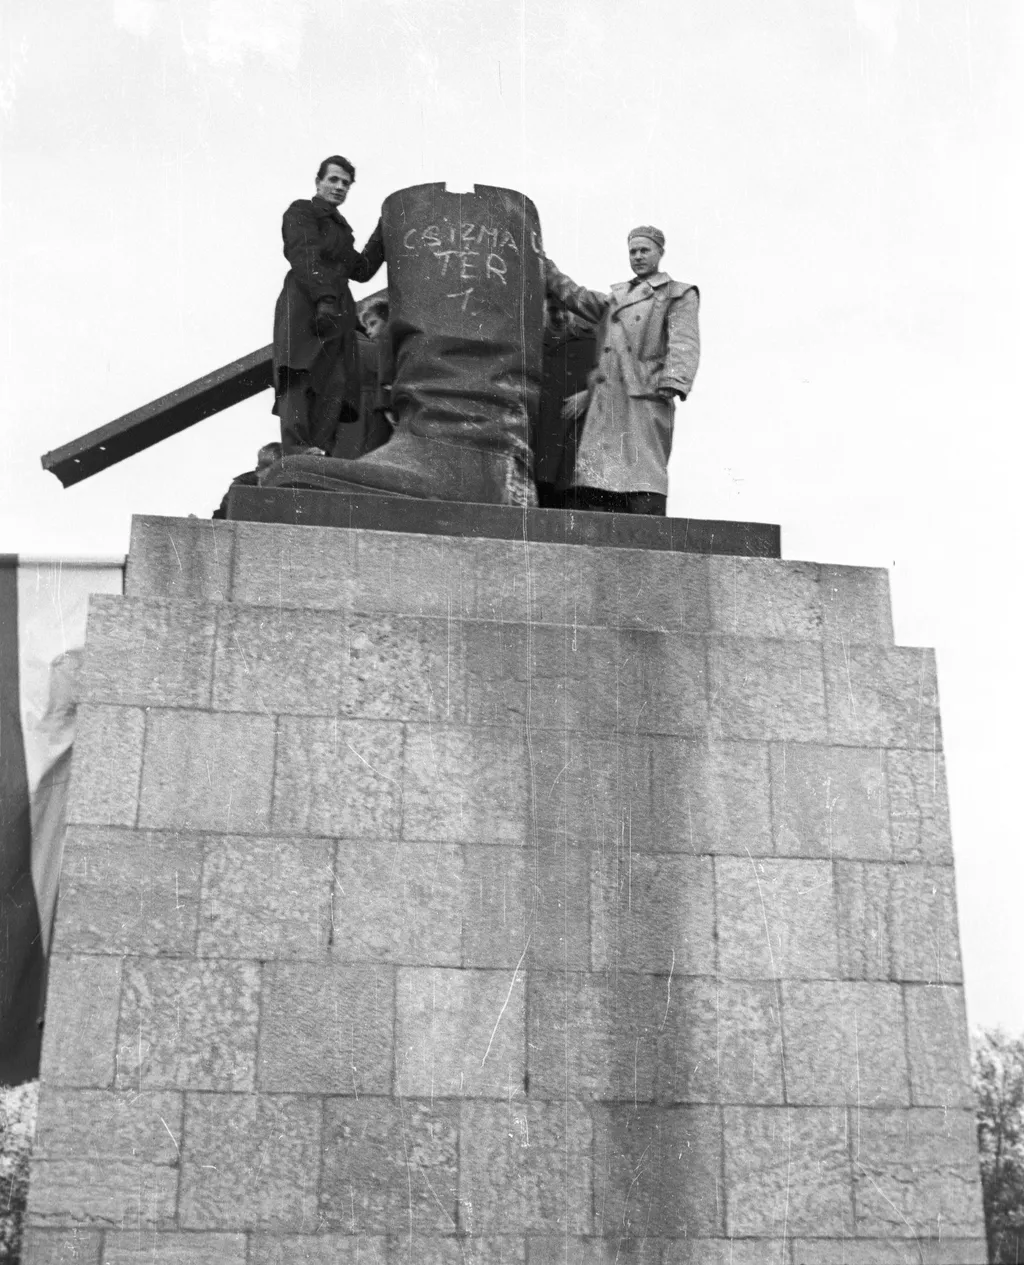 1956 október 23
Budapest XIV.
Ötvenhatosok tere (Sztálin tér), a Sztálin szobor maradványa.
Csizma tér 